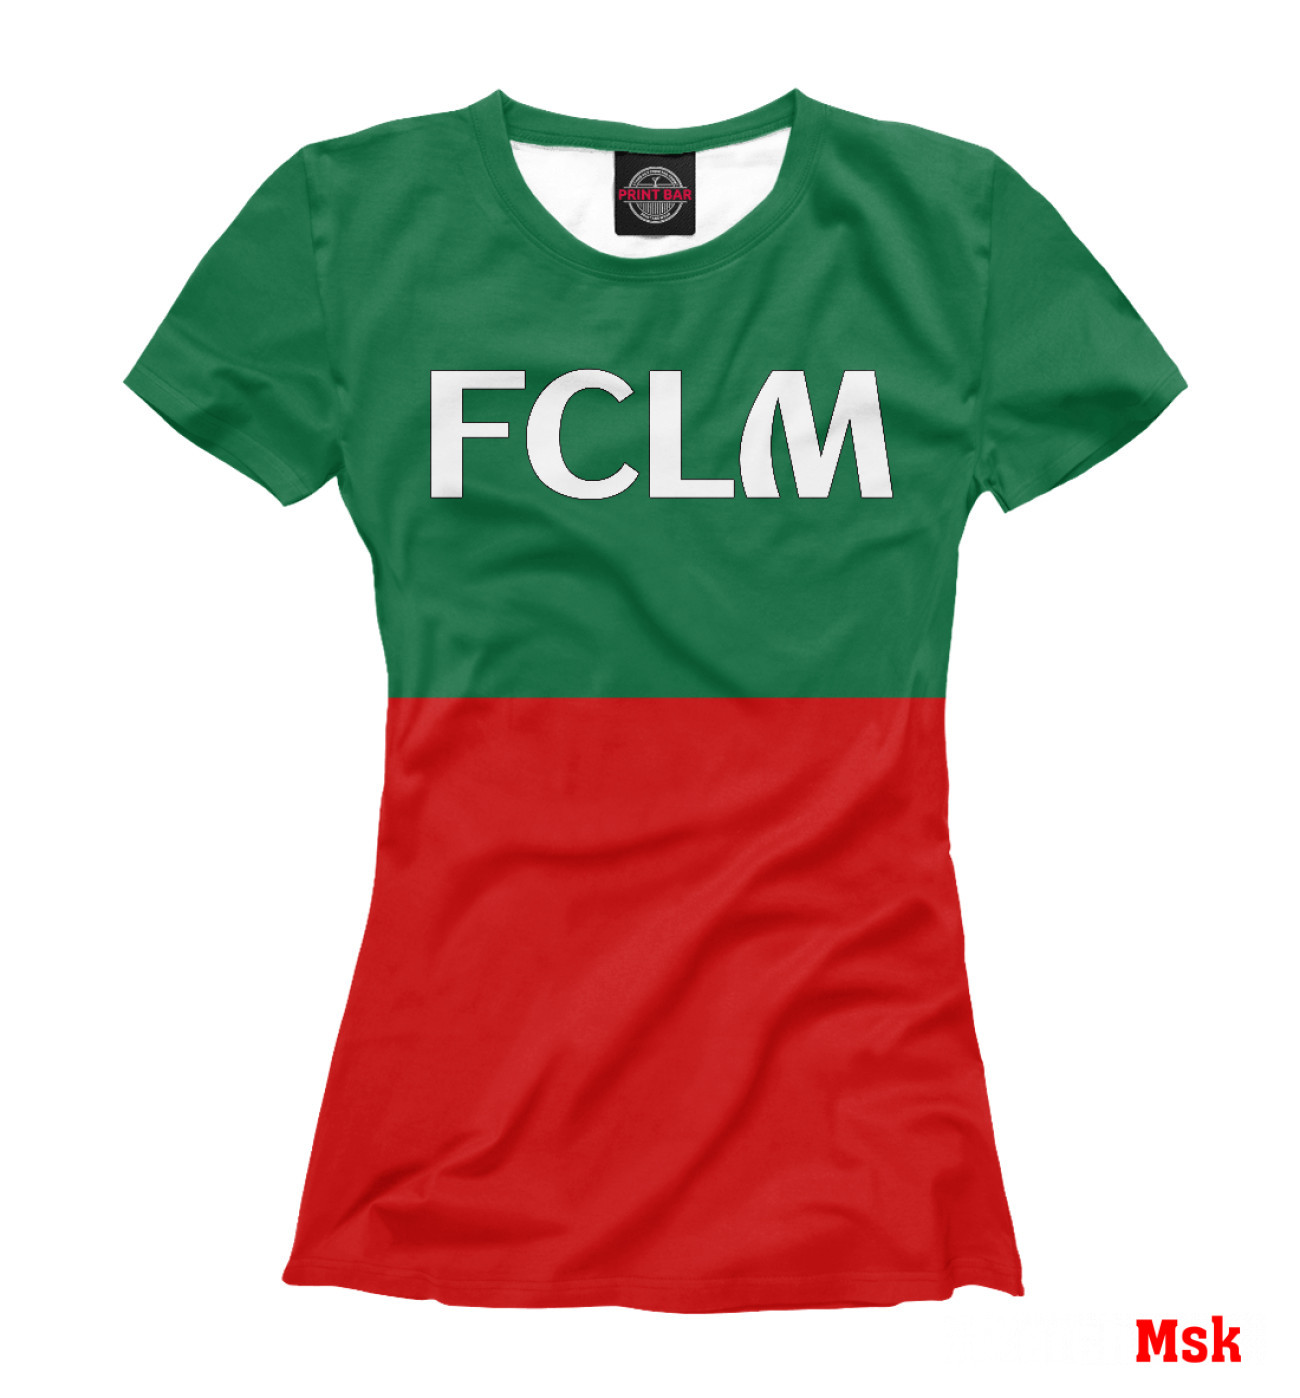 Женская Футболка FCLM, артикул: FTO-591610-fut-1